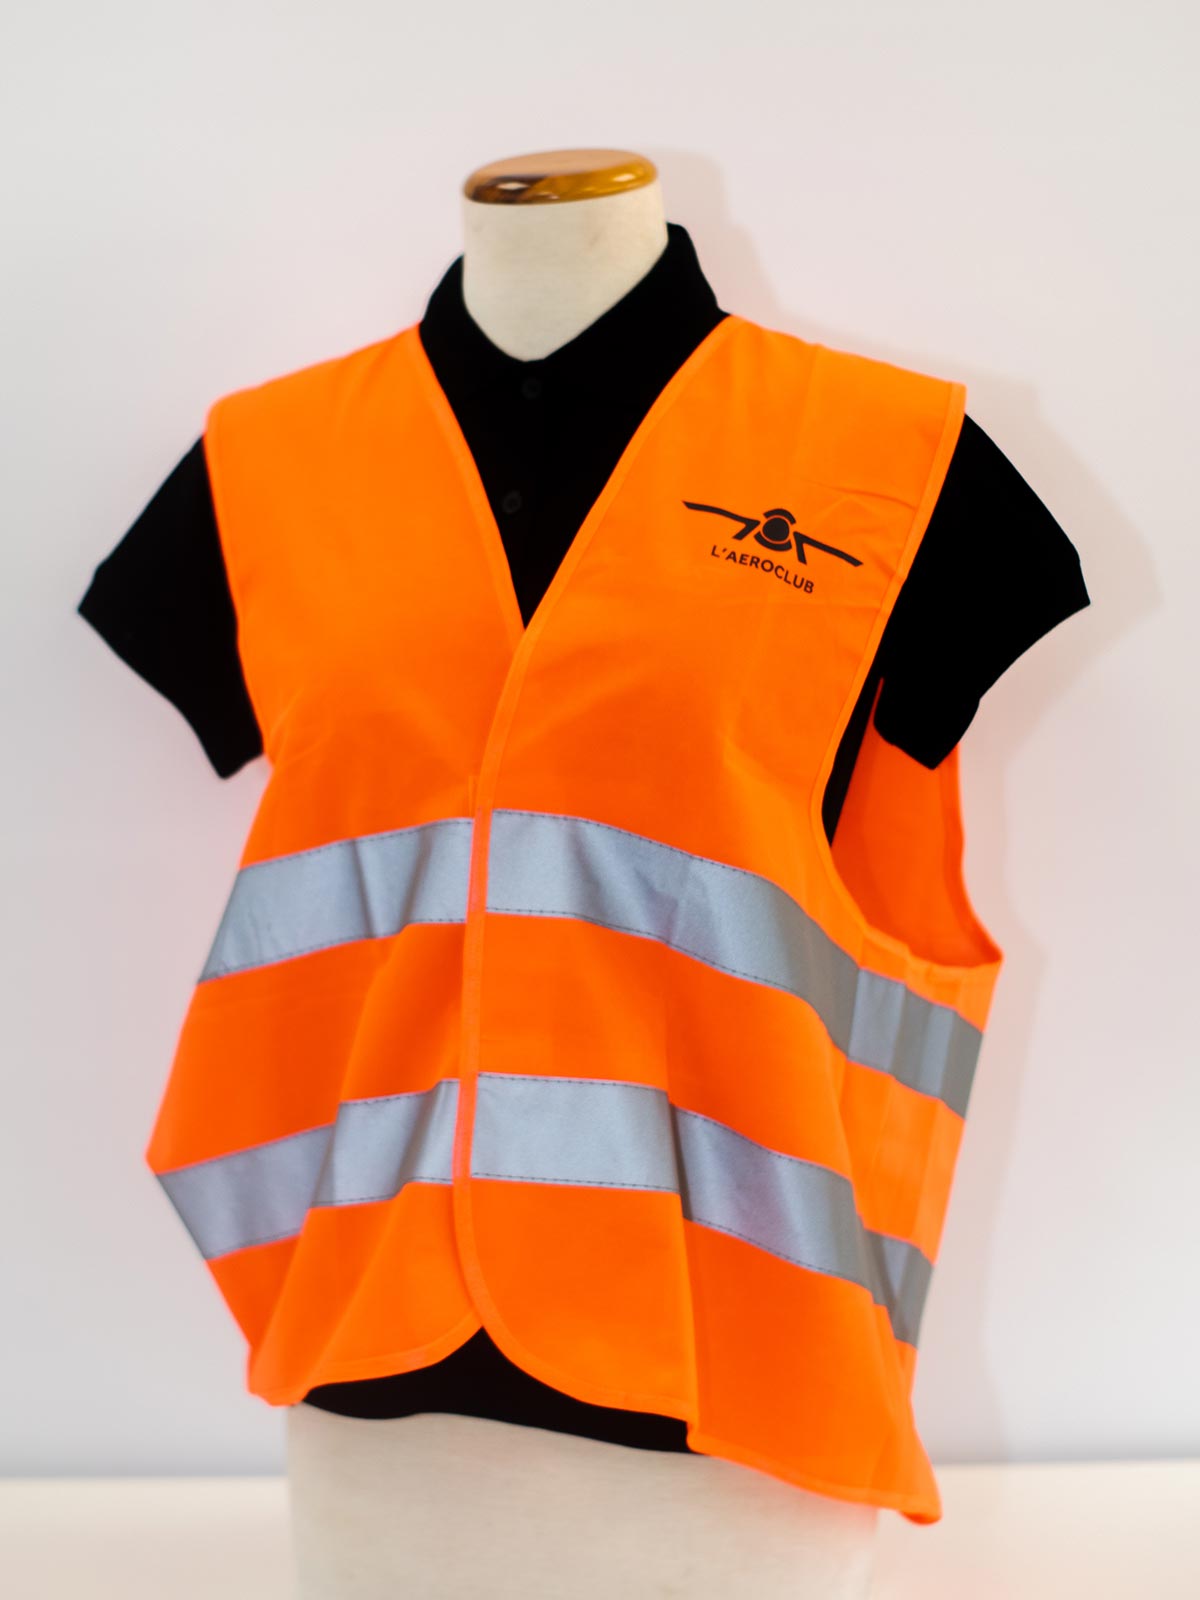 Ultrasport Mens Reflective Safety Vest 